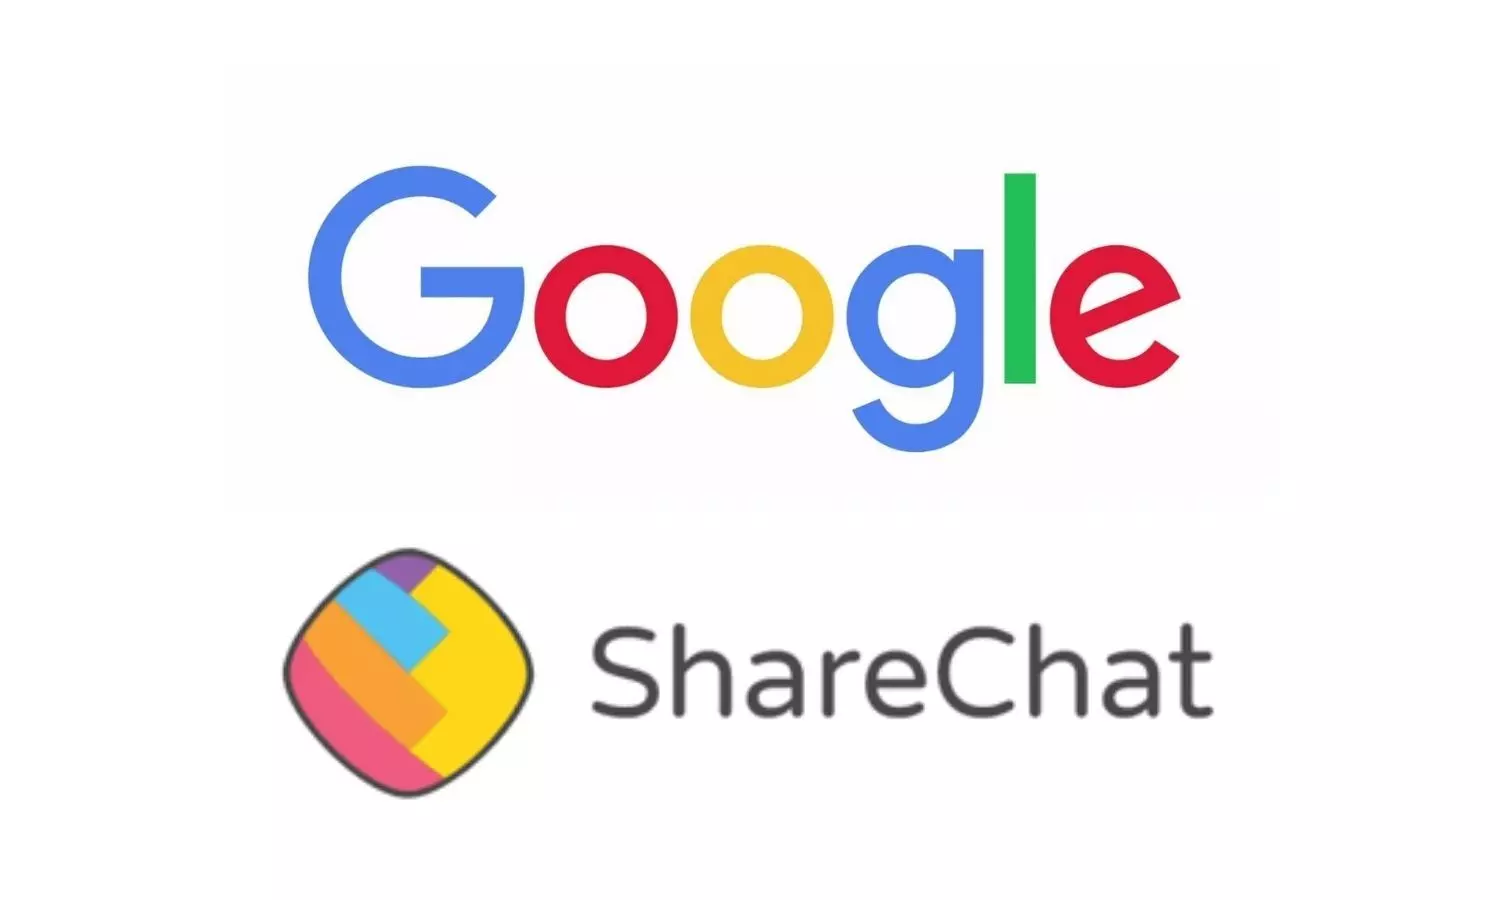 Google and ShareChat logos